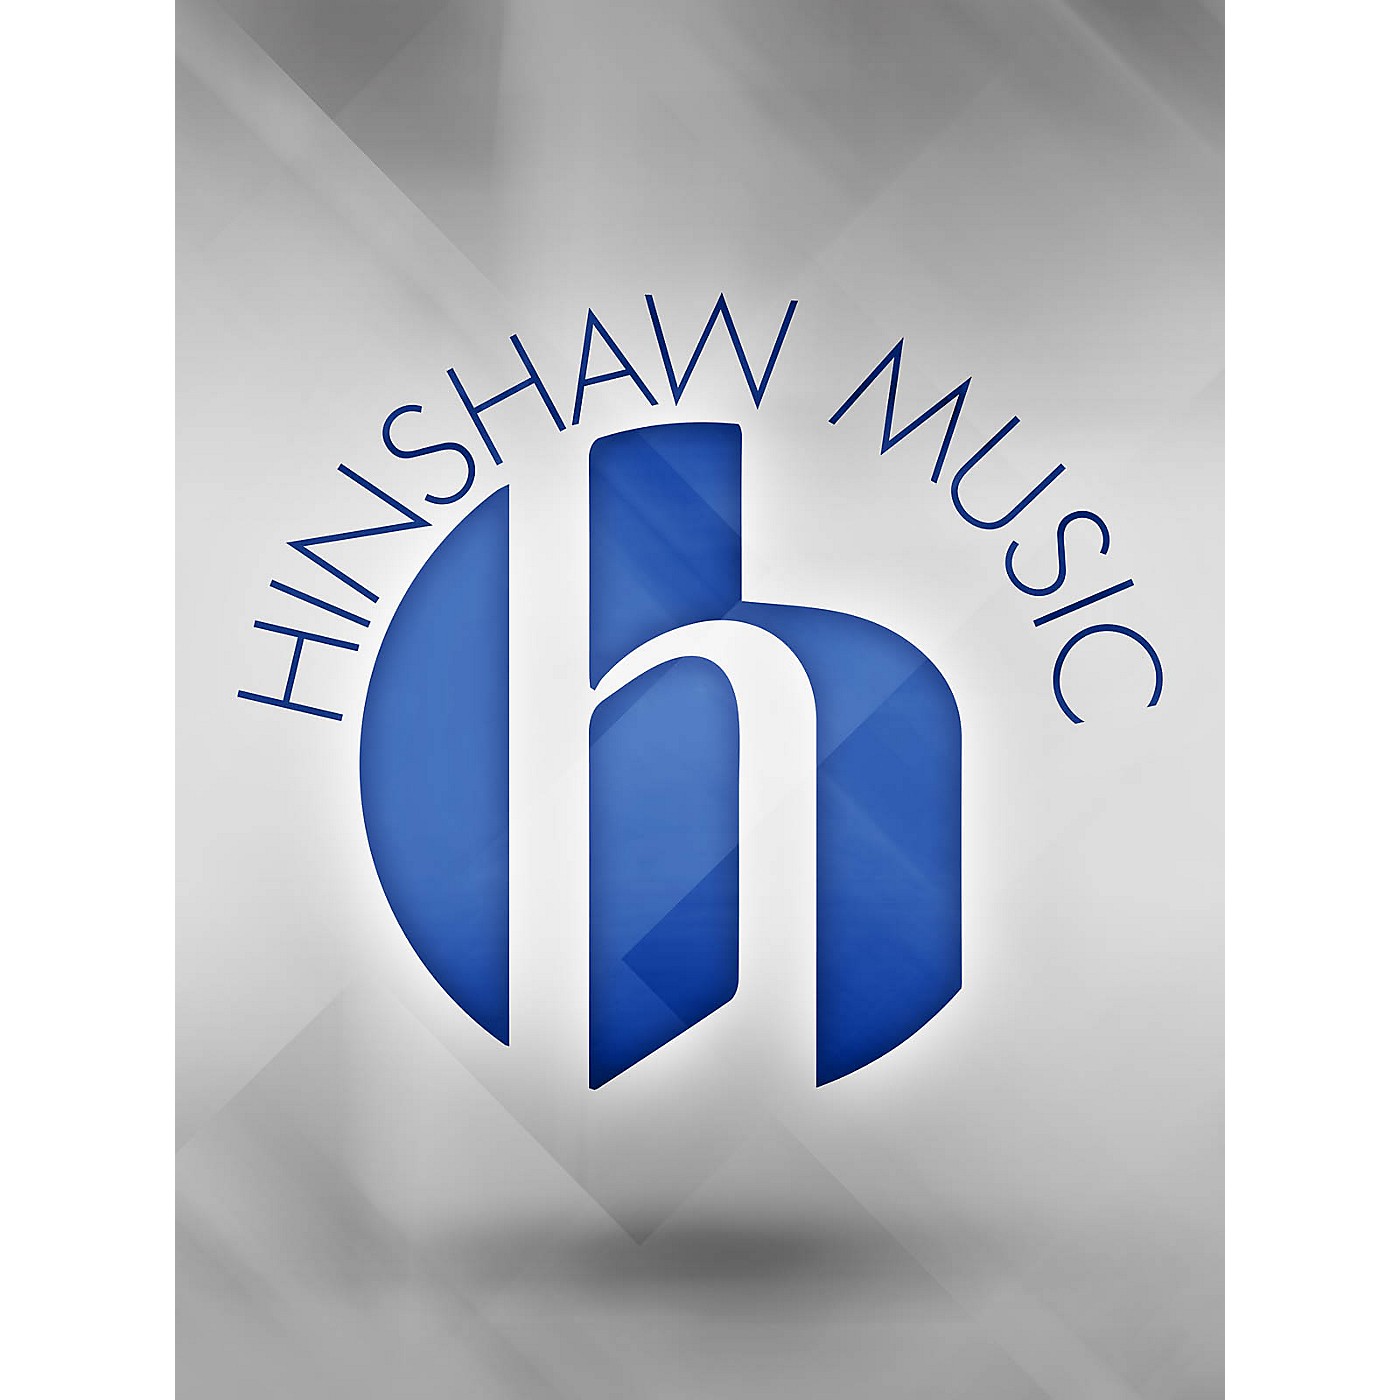 Hinshaw Music Threnody SATB DIVISI Composed by Nancy Cobb thumbnail